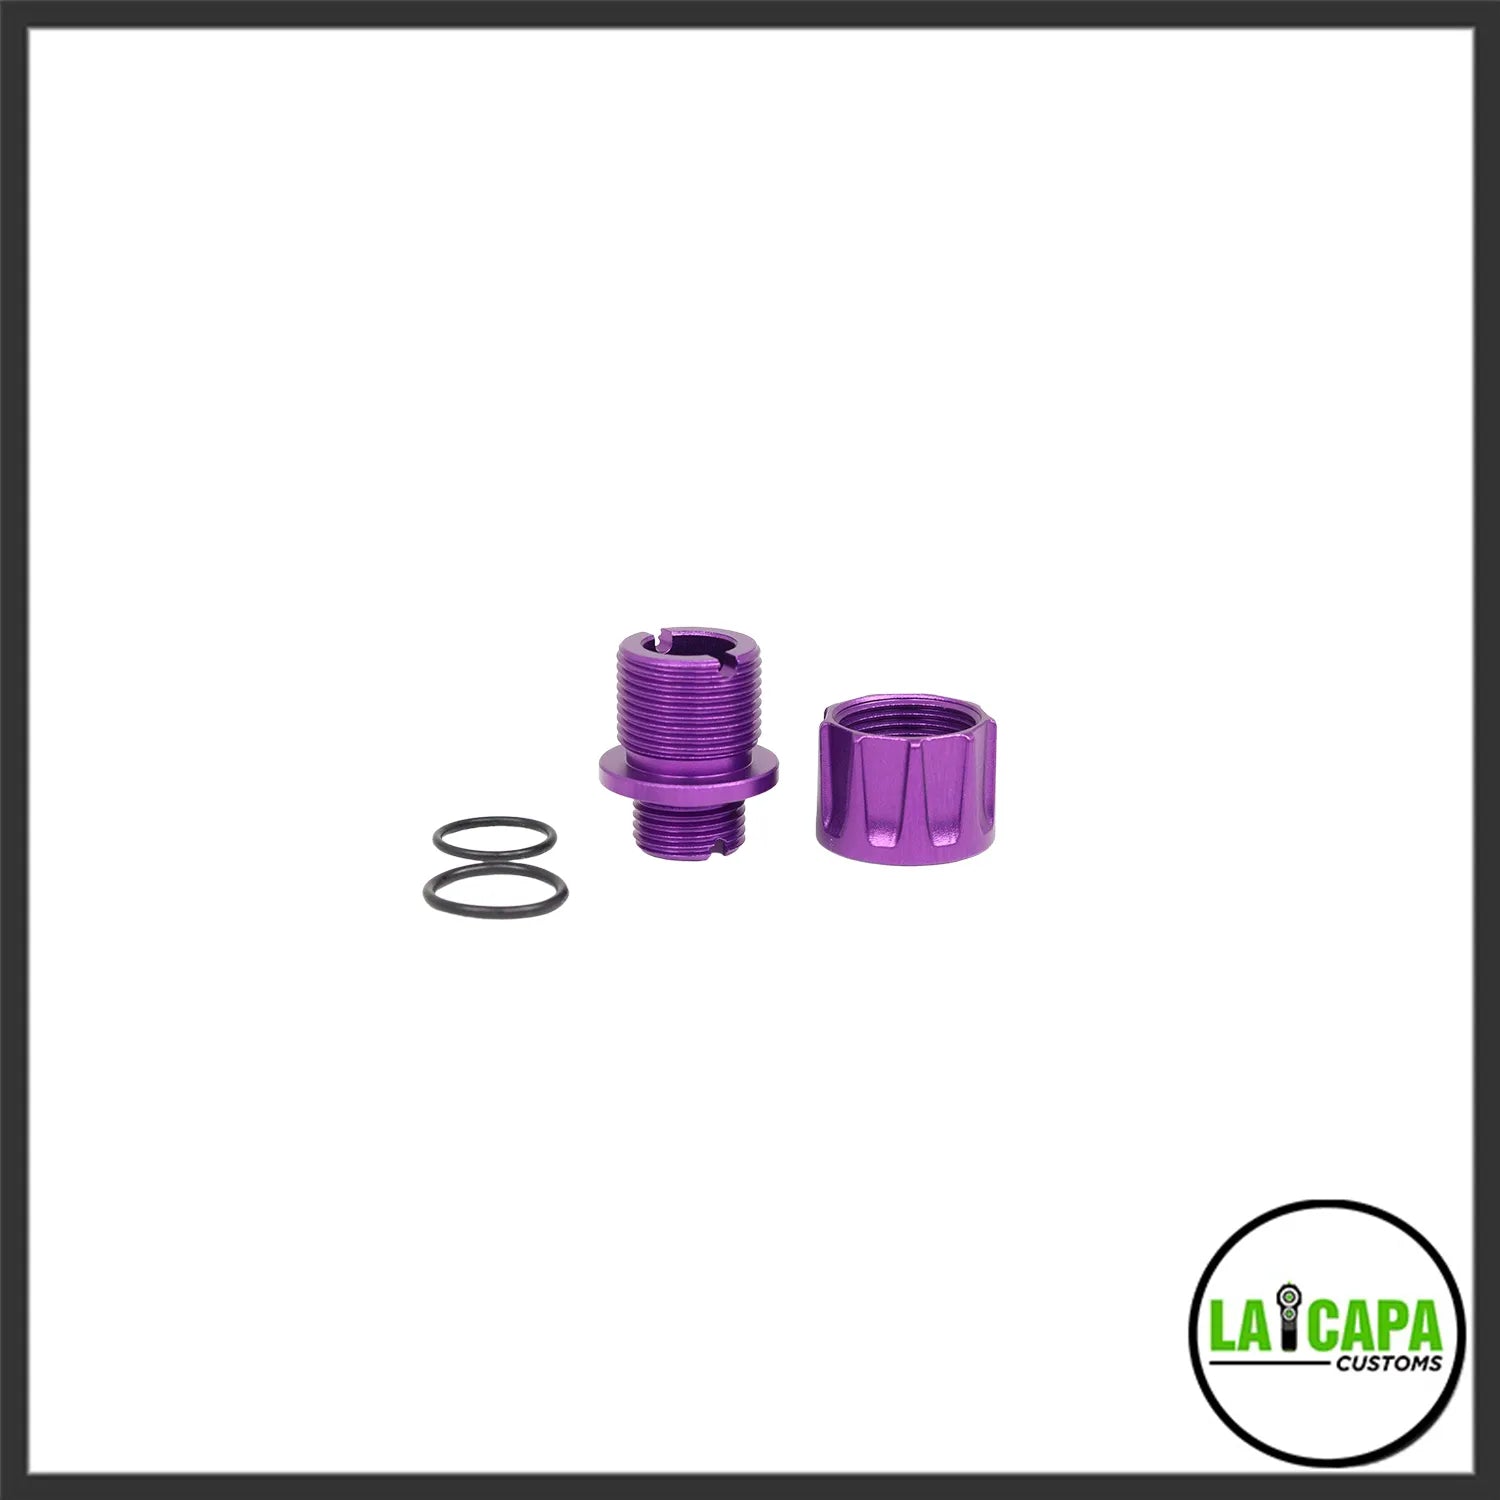 LA Capa Customs “S1” Reversible Thread Adapter for Hi Capa - Purple